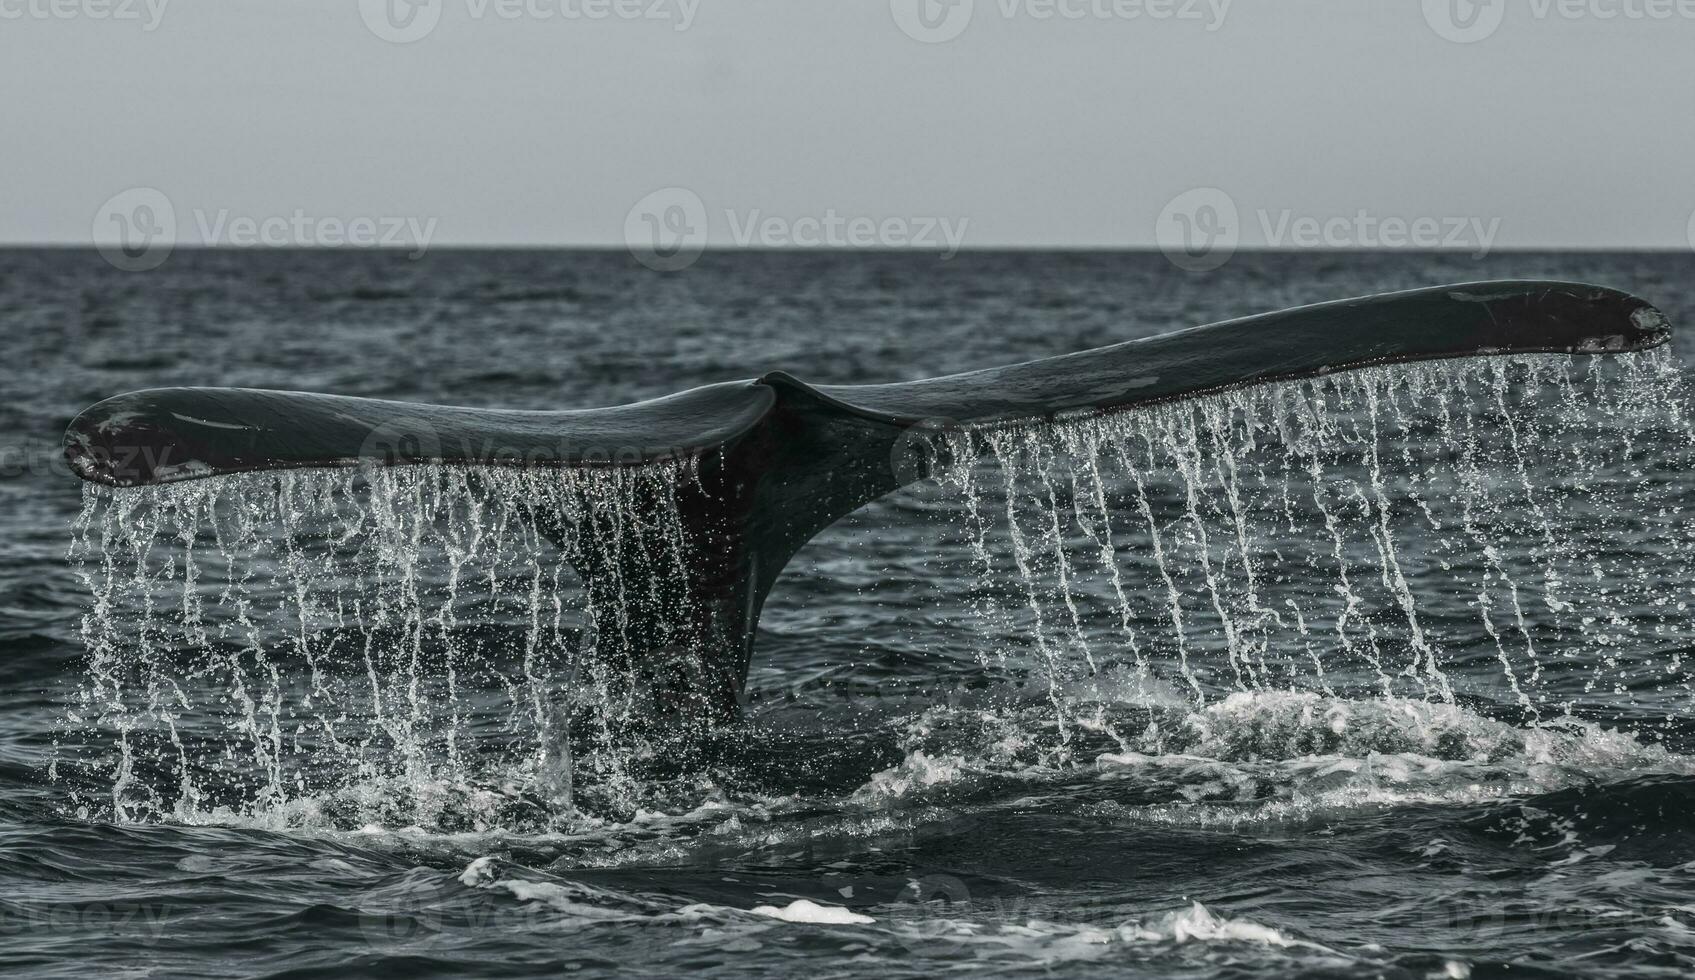 une baleine queue est vu dans le l'eau photo